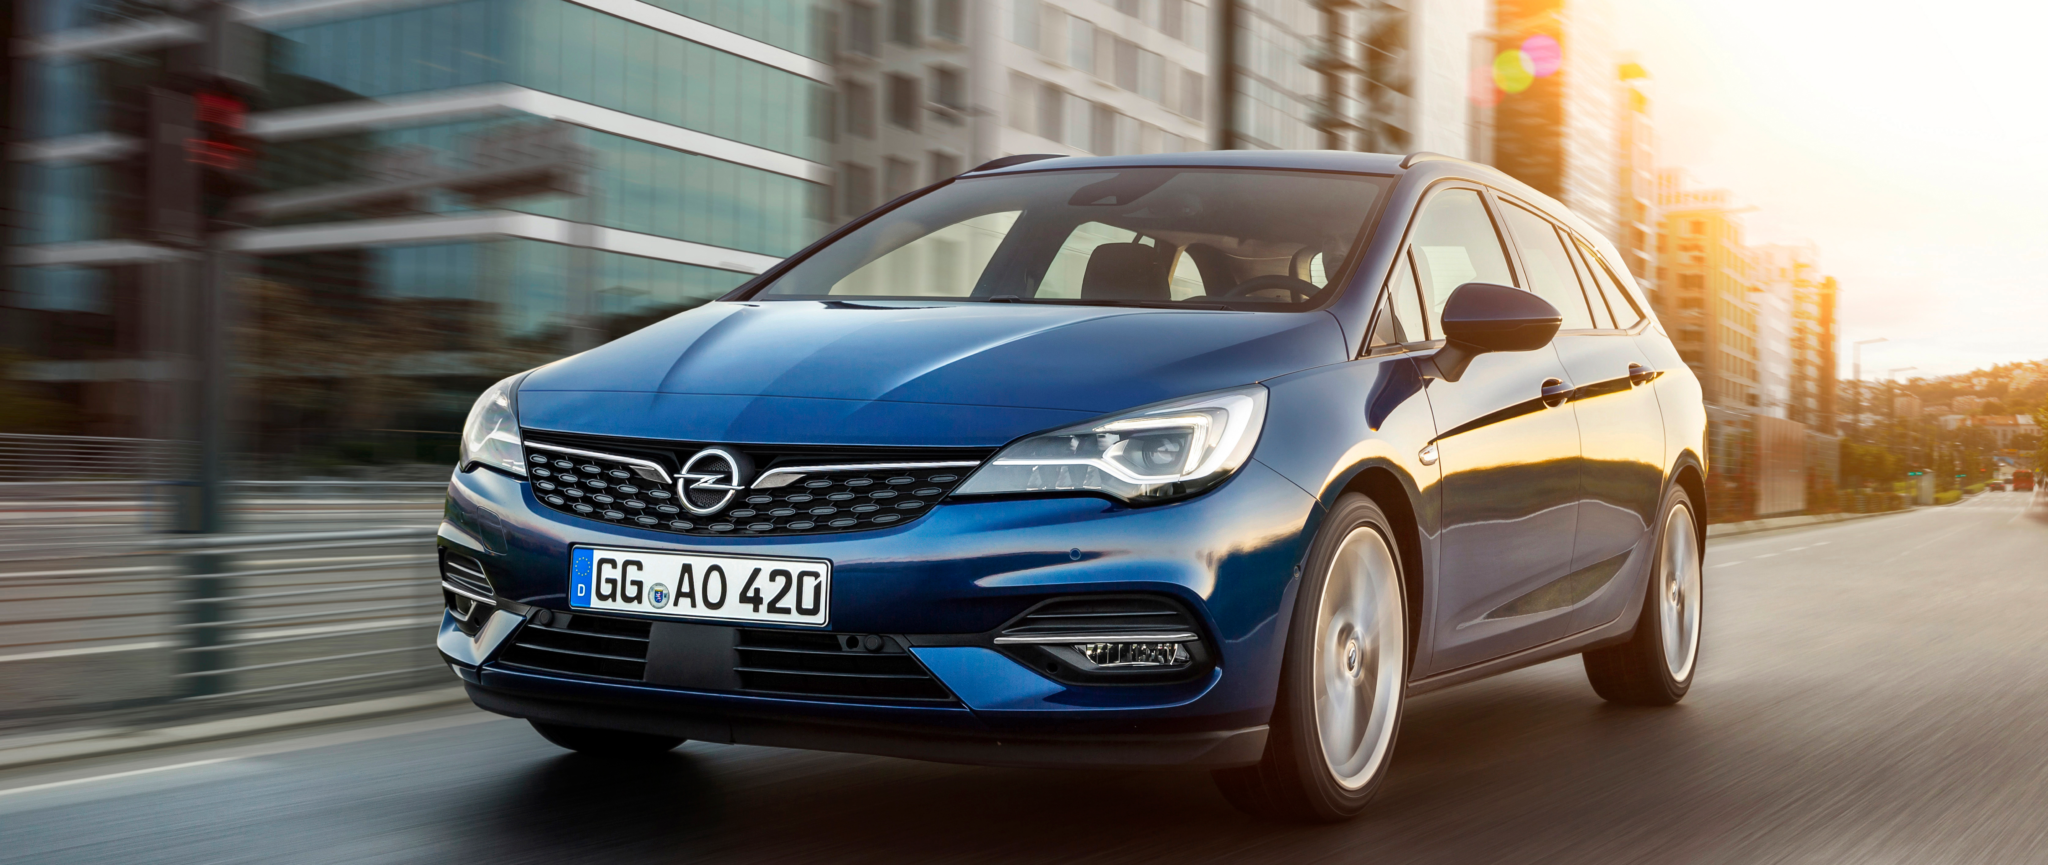 Opel Astra Sports Tourer 507800 - El nuevo Opel Astra se pone al día en tecnología